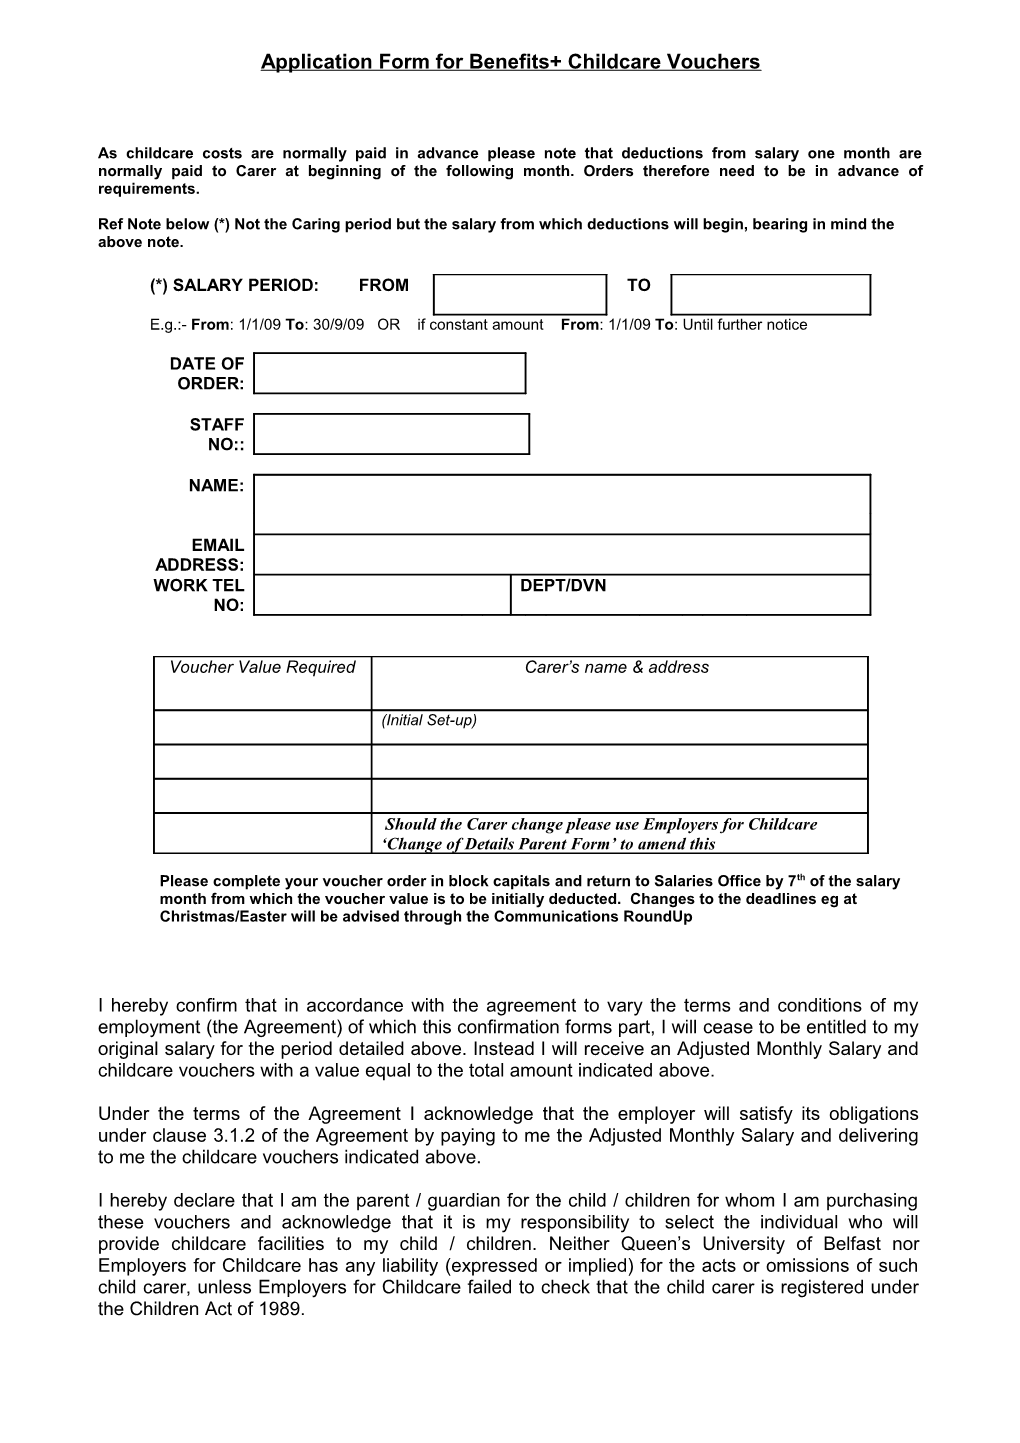 Application Form for Childcare Voucher Scheme